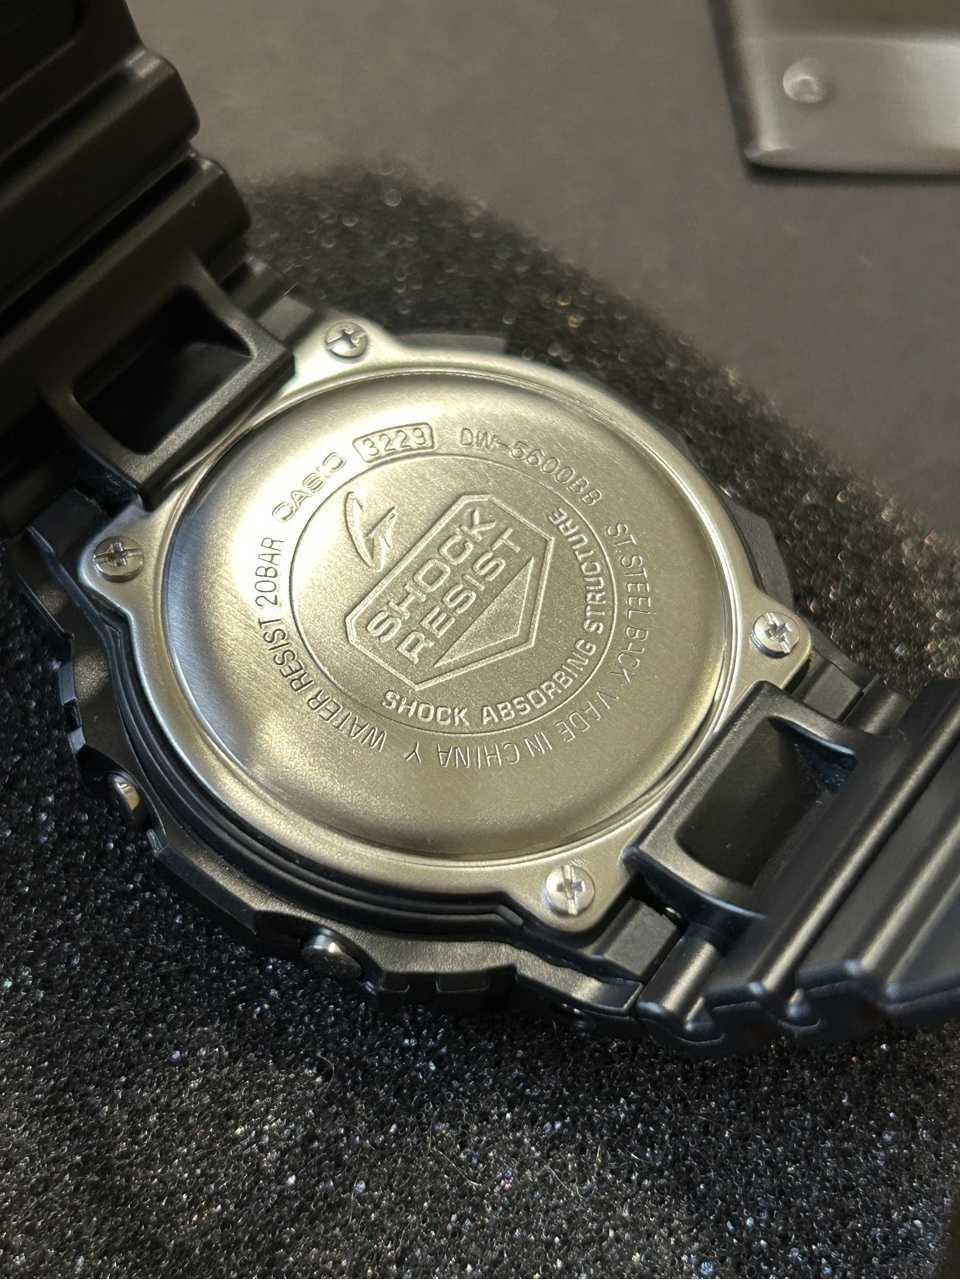 Casio zegarek męski DW-5600BB-1ER g-shock